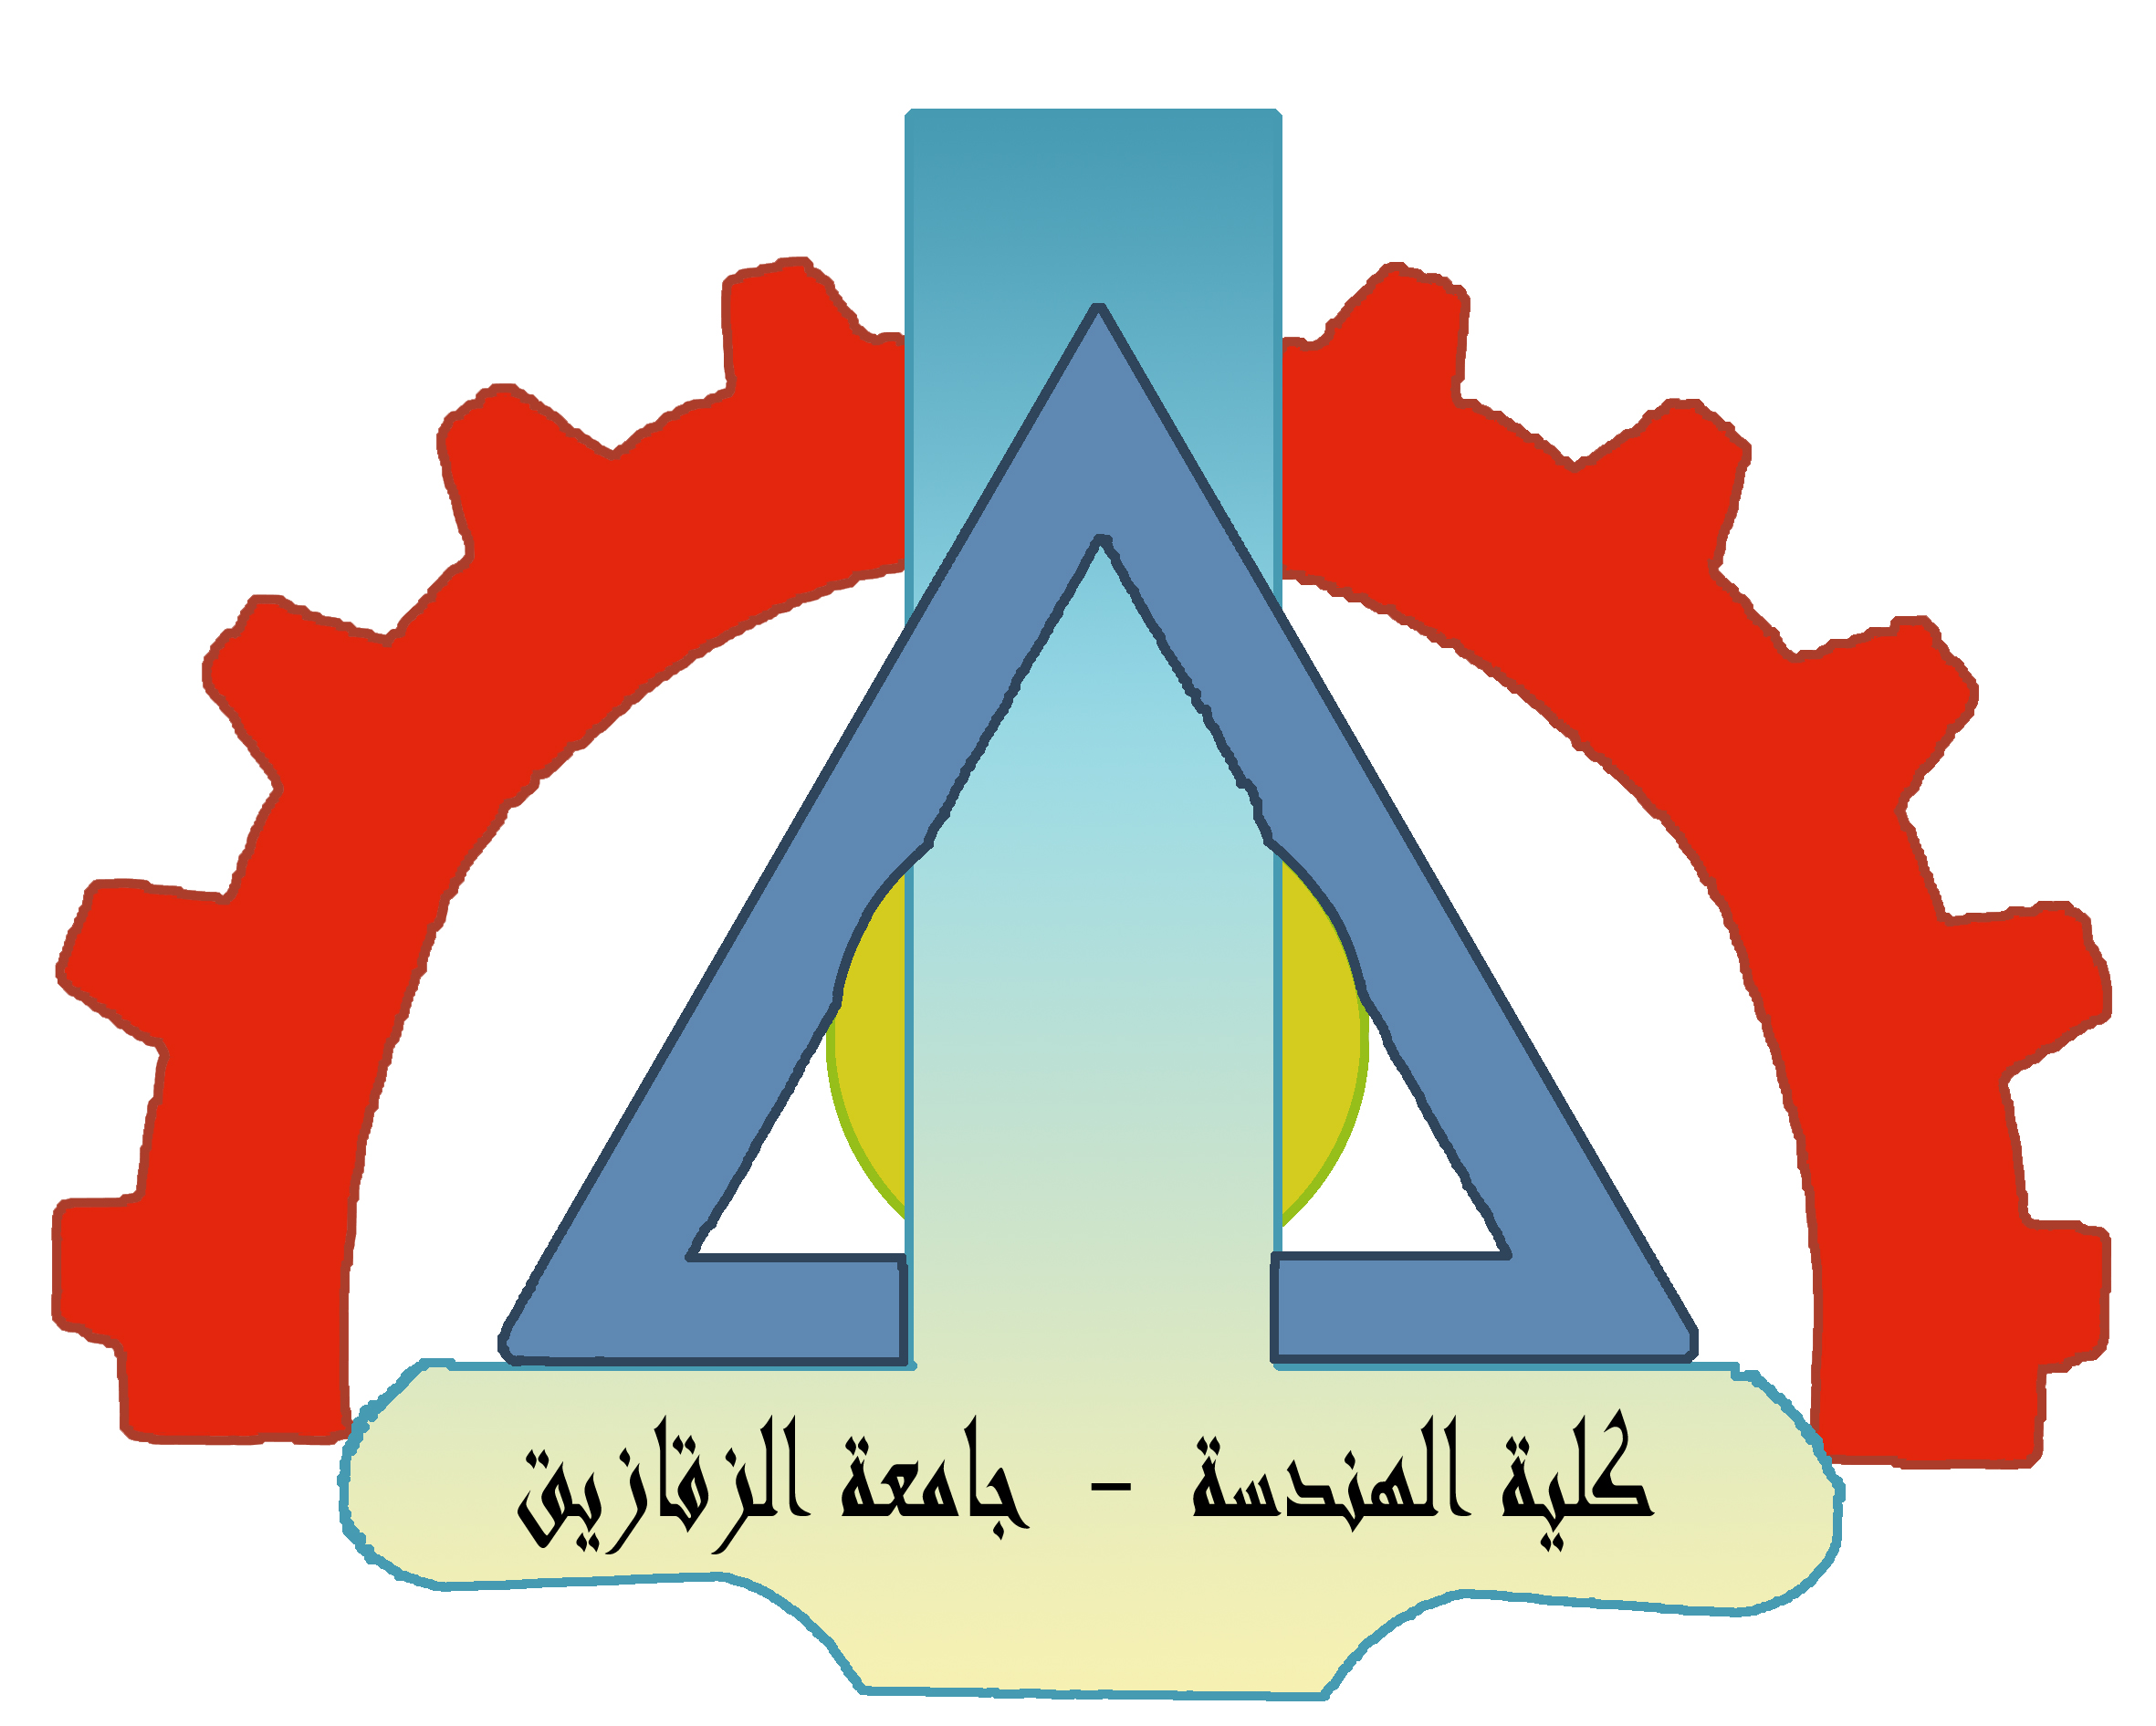 موافقة مجلس كلية الهندسة على ترقية د / ياسر الحسينى  بقسم الهندسة الانشائية الى درجة استاذ مساعد